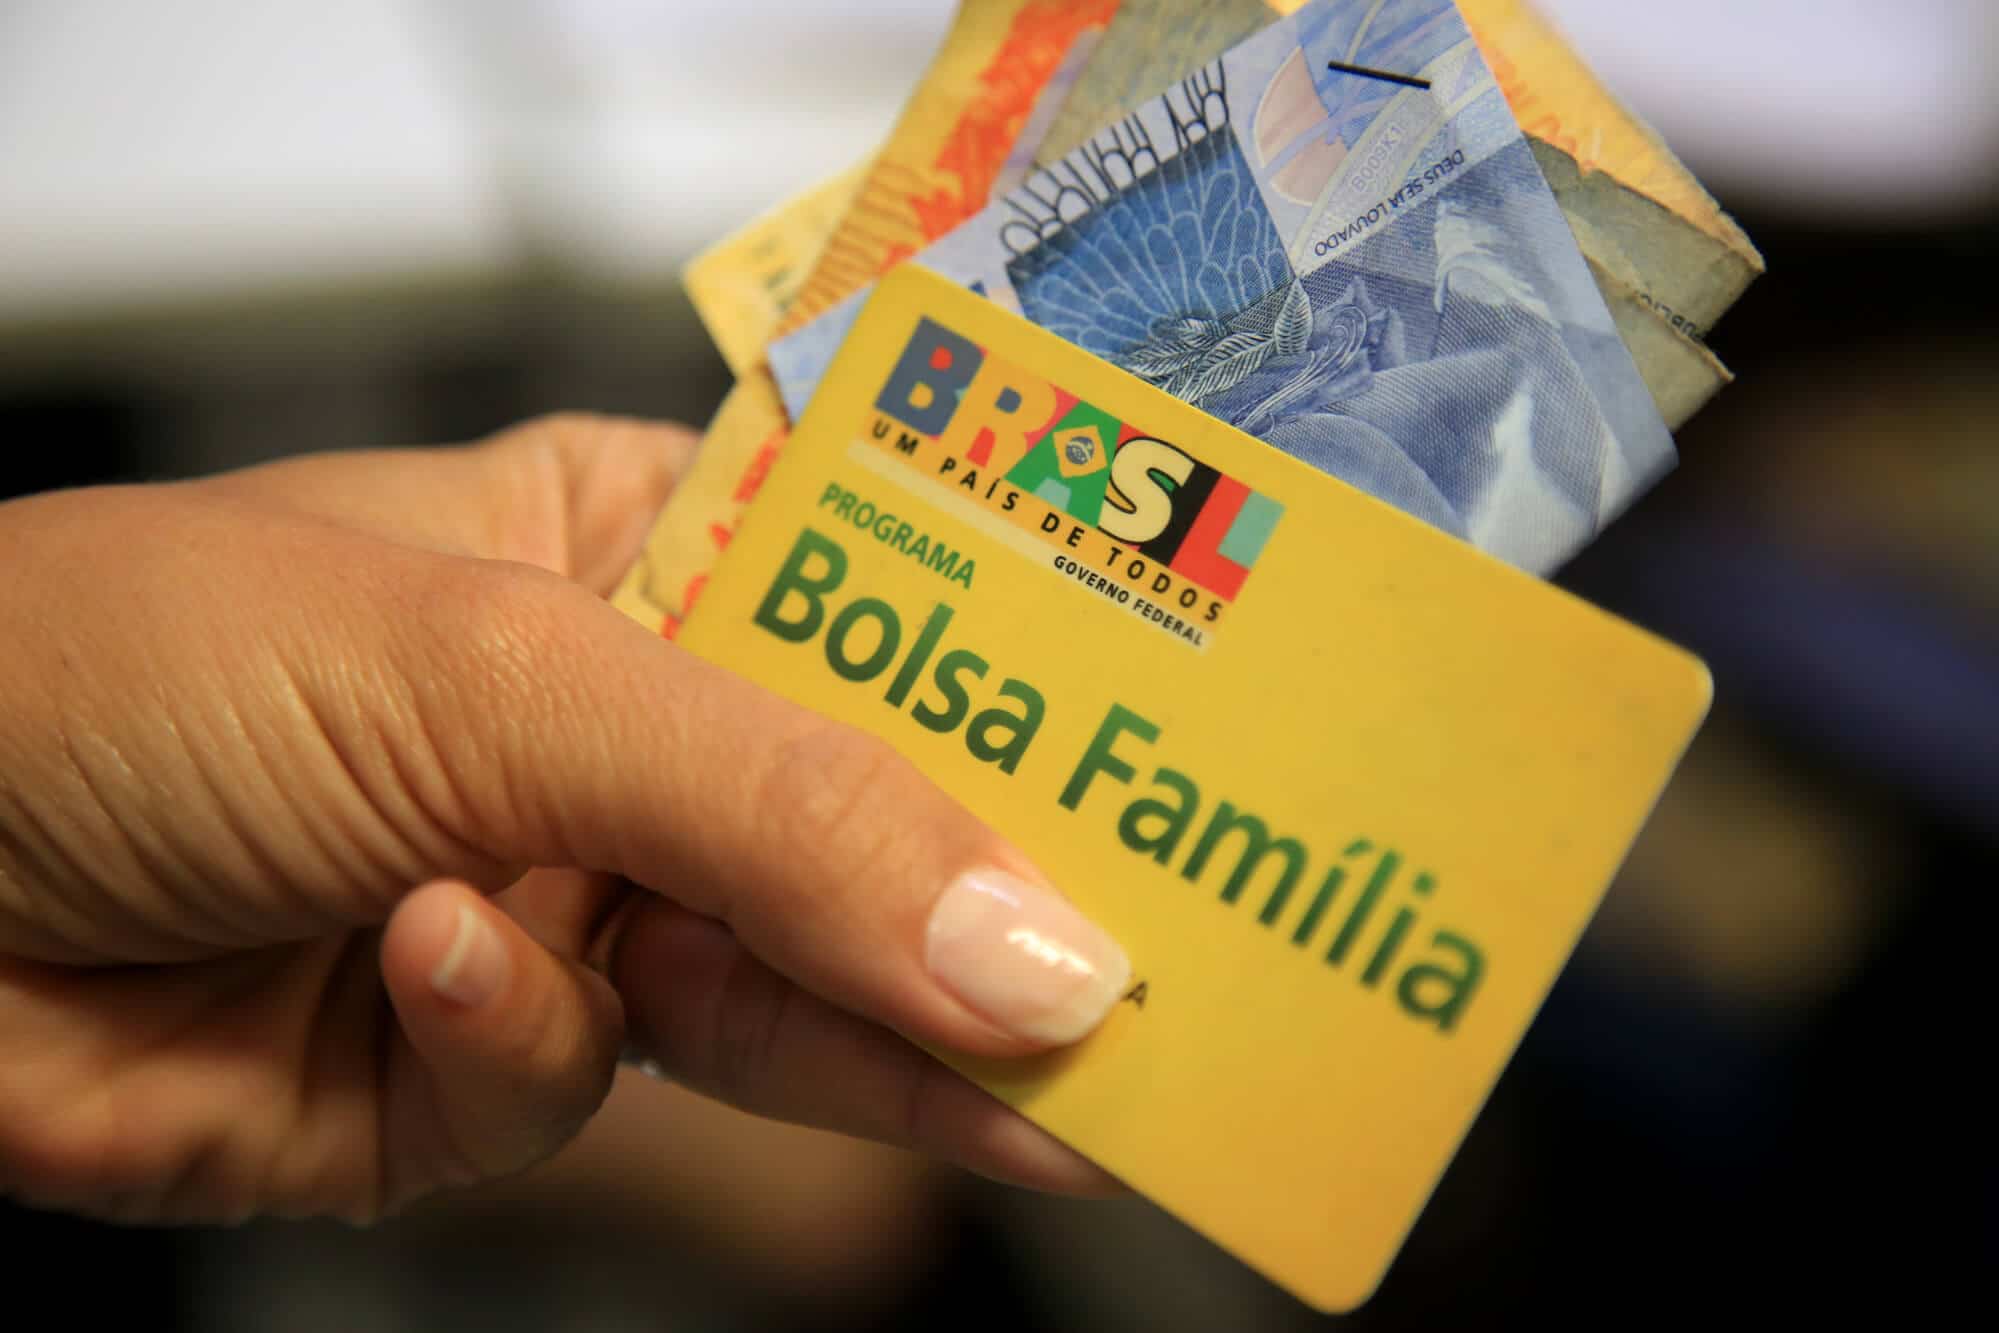 Segurados do Bolsa Família que aumentam a renda para acima de R$ 218, não perdem o benefício de imediato